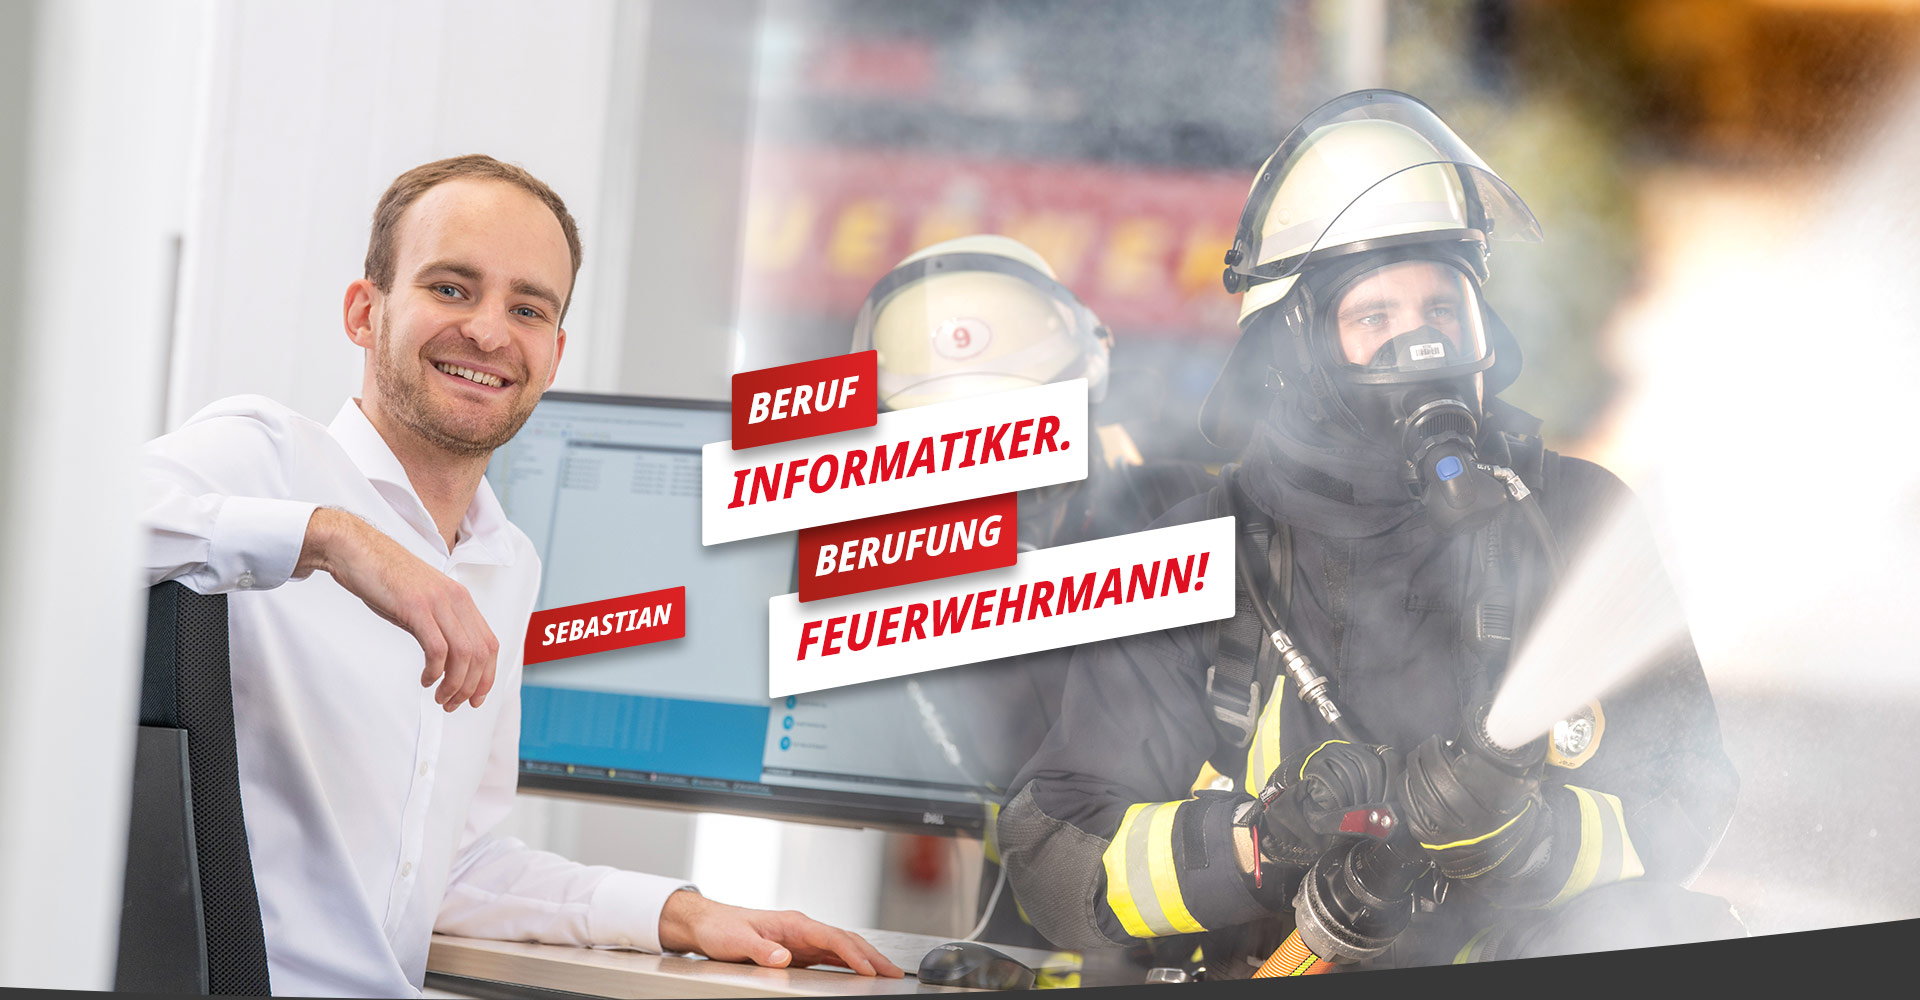 Sebastian - Beruf Informatiker, Berufung Feuerwehrmann